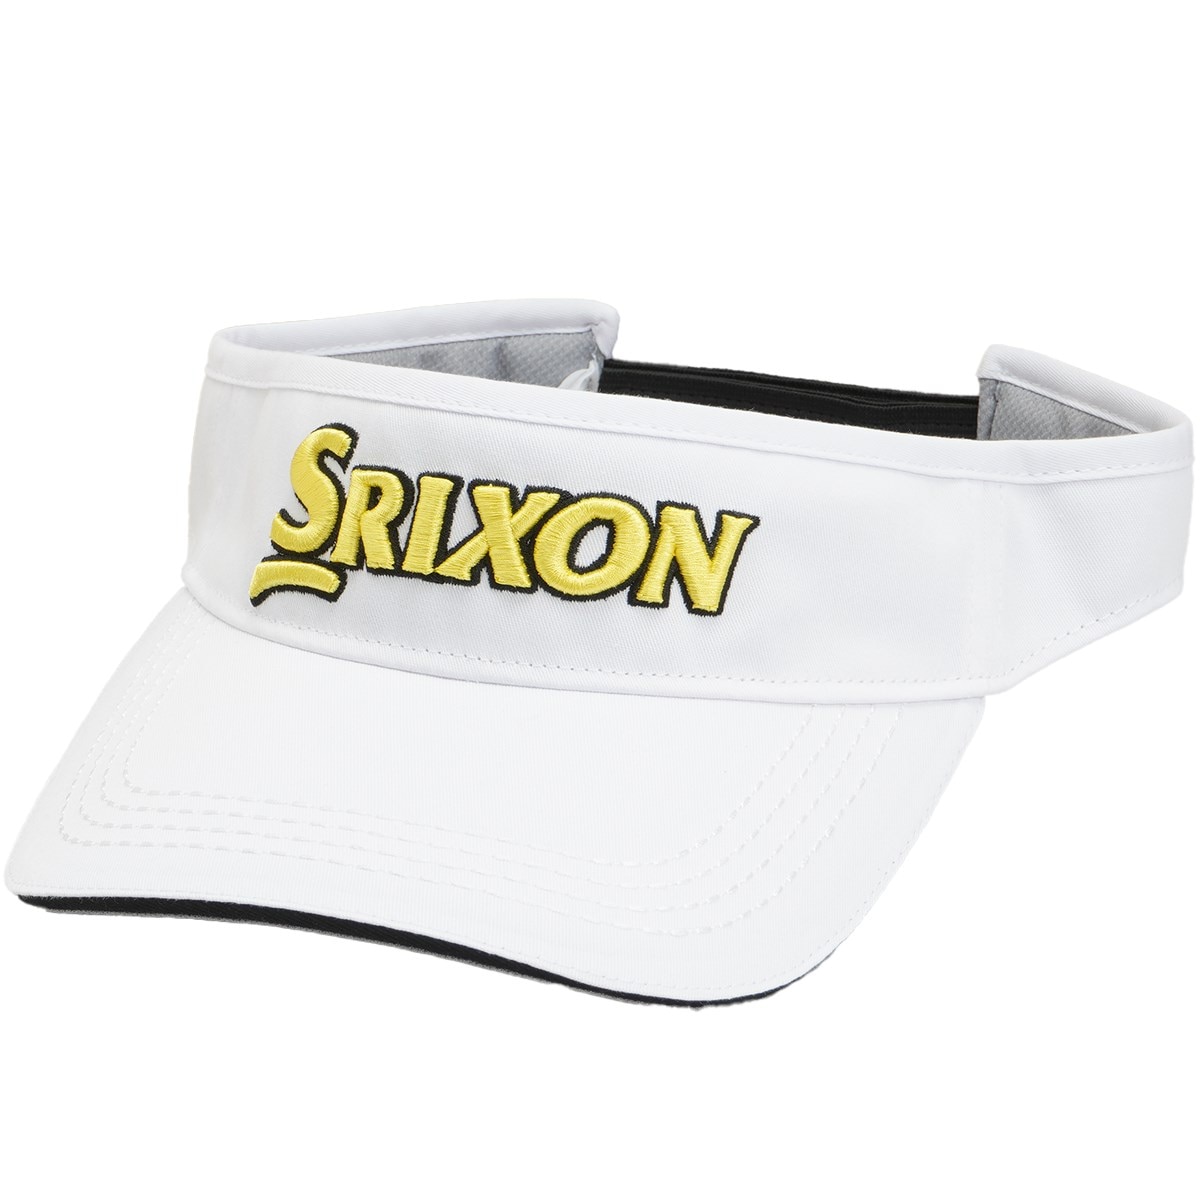 サンバイザー(【男性】バイザー)|SRIXON(ダンロップ) SMH3331Xの通販 GDOゴルフショップ(0000691818)